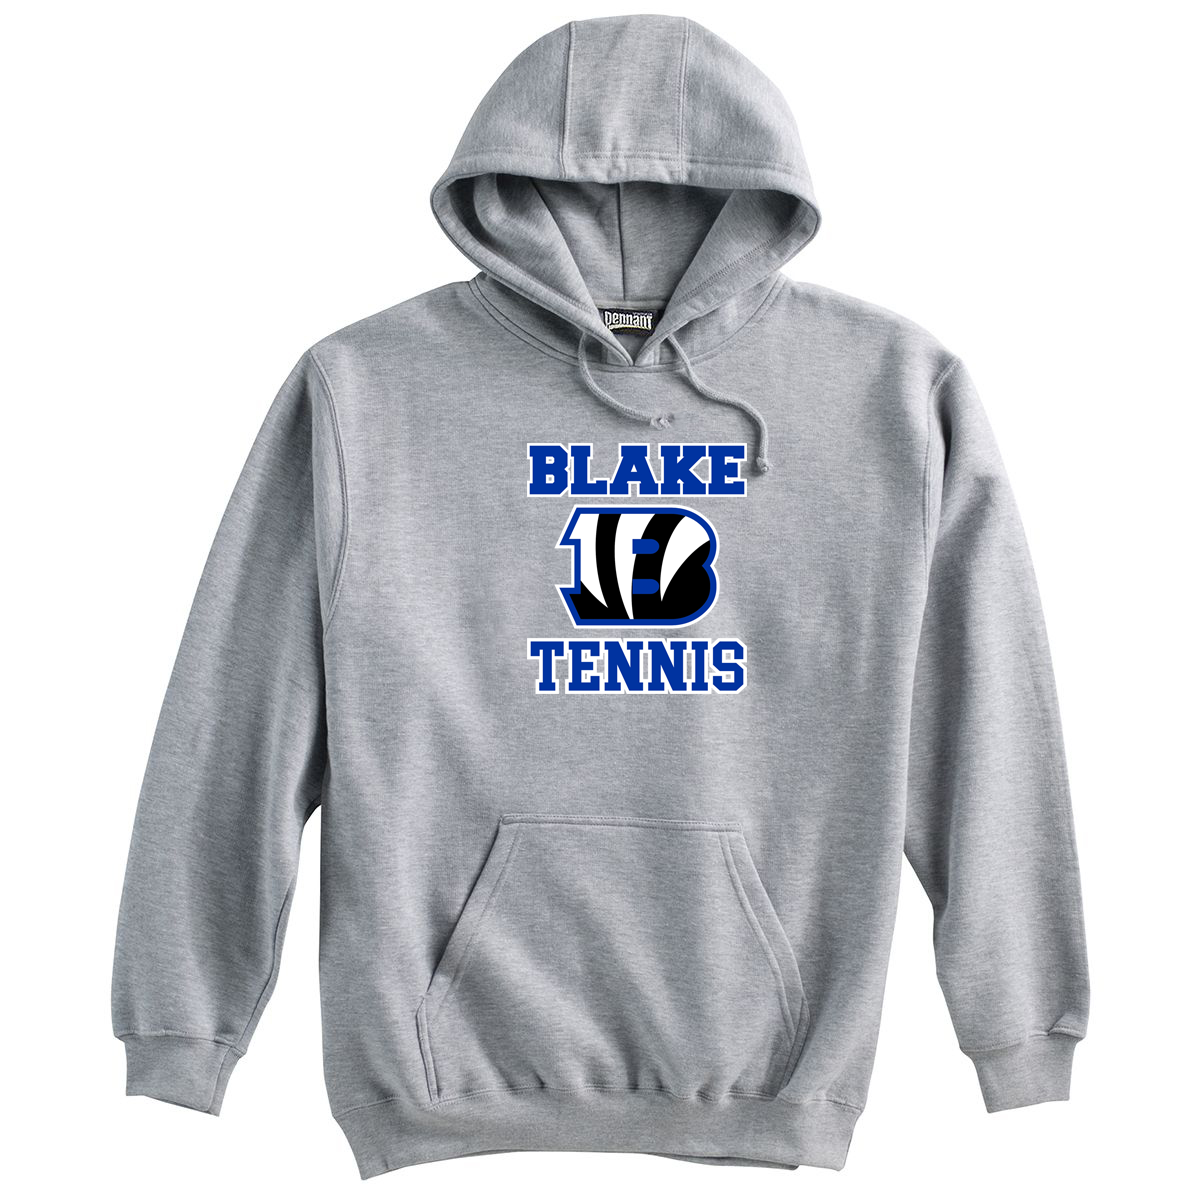 Blake Tennis Sweatshirt